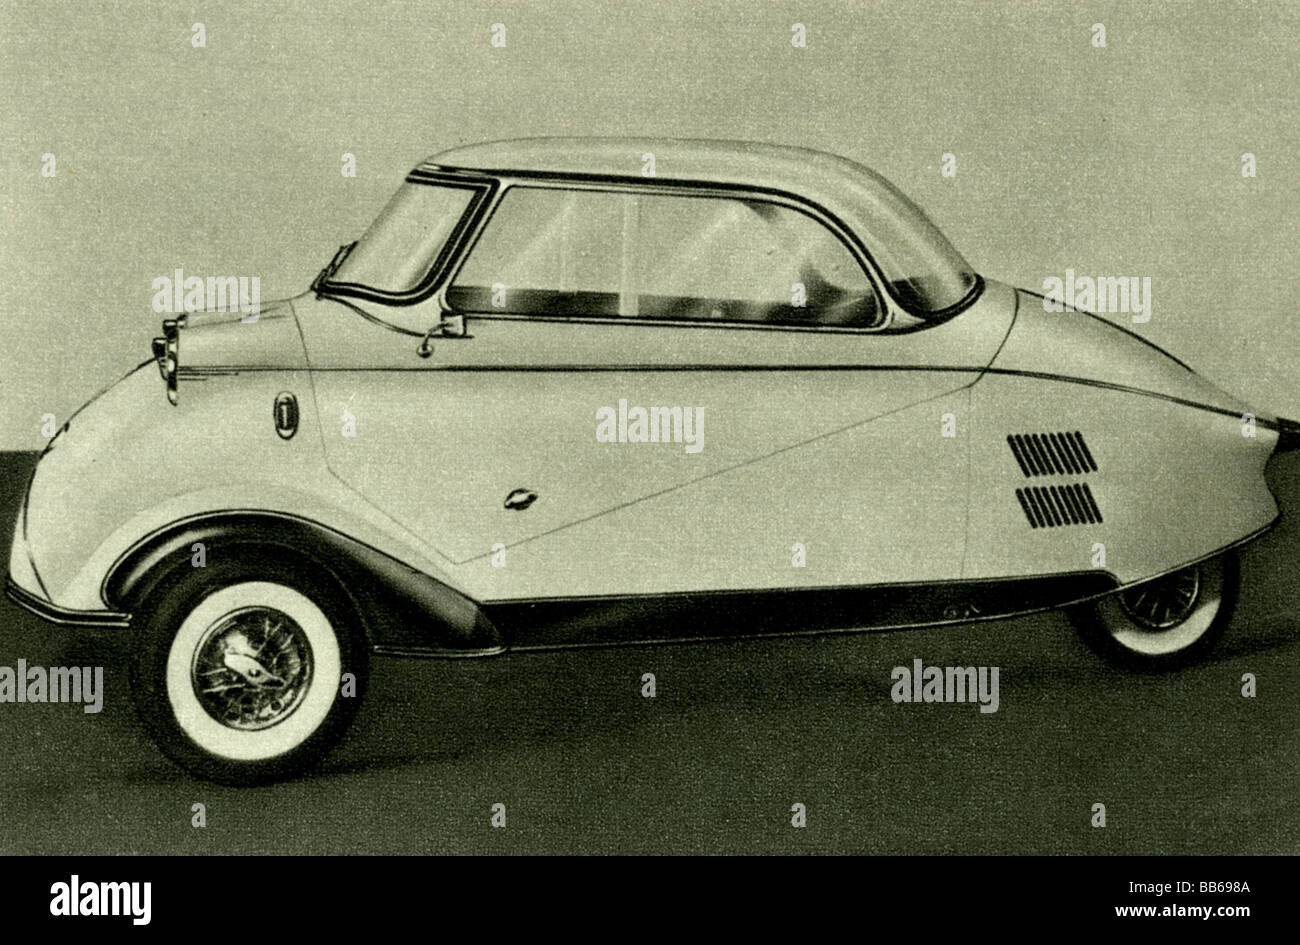 https://c8.alamy.com/comp/BB698A/transport-transportation-car-messerschmitt-kabinenroller-1954-BB698A.jpg